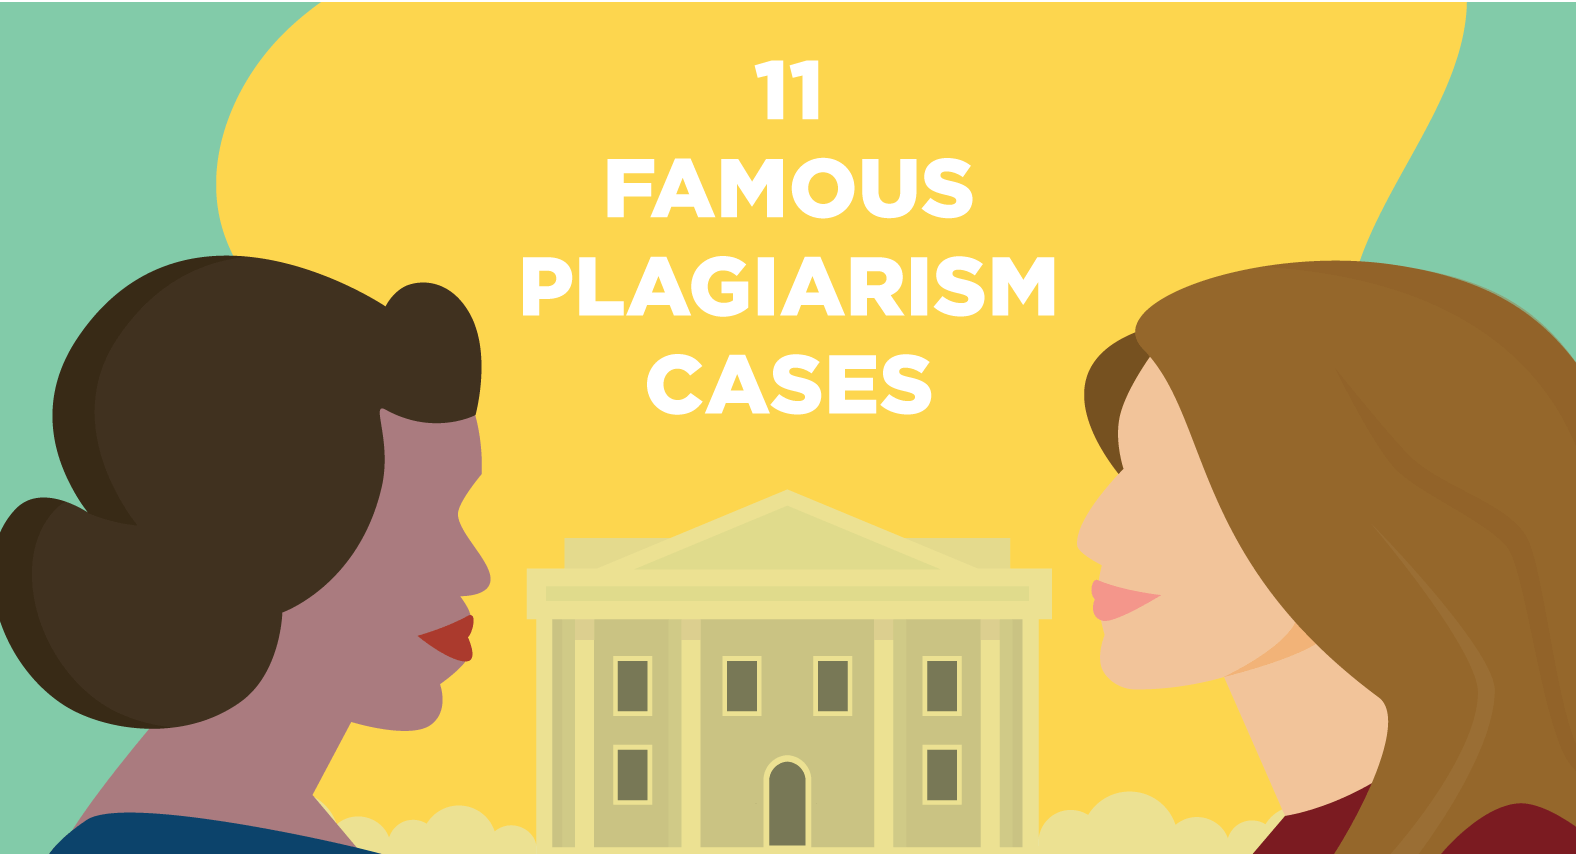 plagiarism scandals